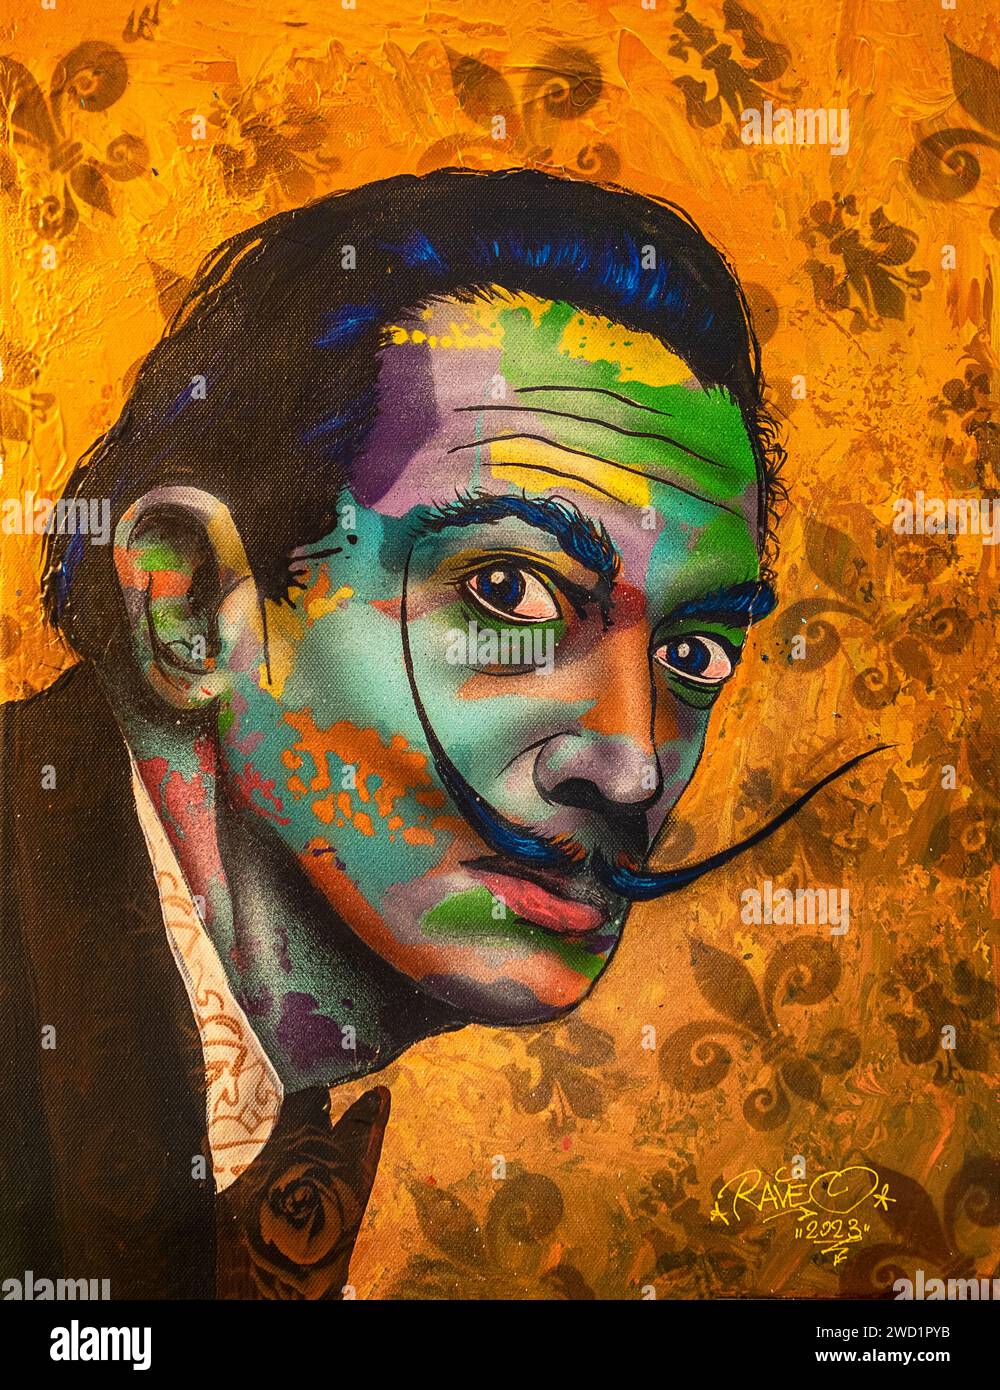 Salvador Dalí Persona coloré Une illustration d'art moderne en toile avec des coups de pinceau et de spray et un arrière-plan vibrant Banque D'Images